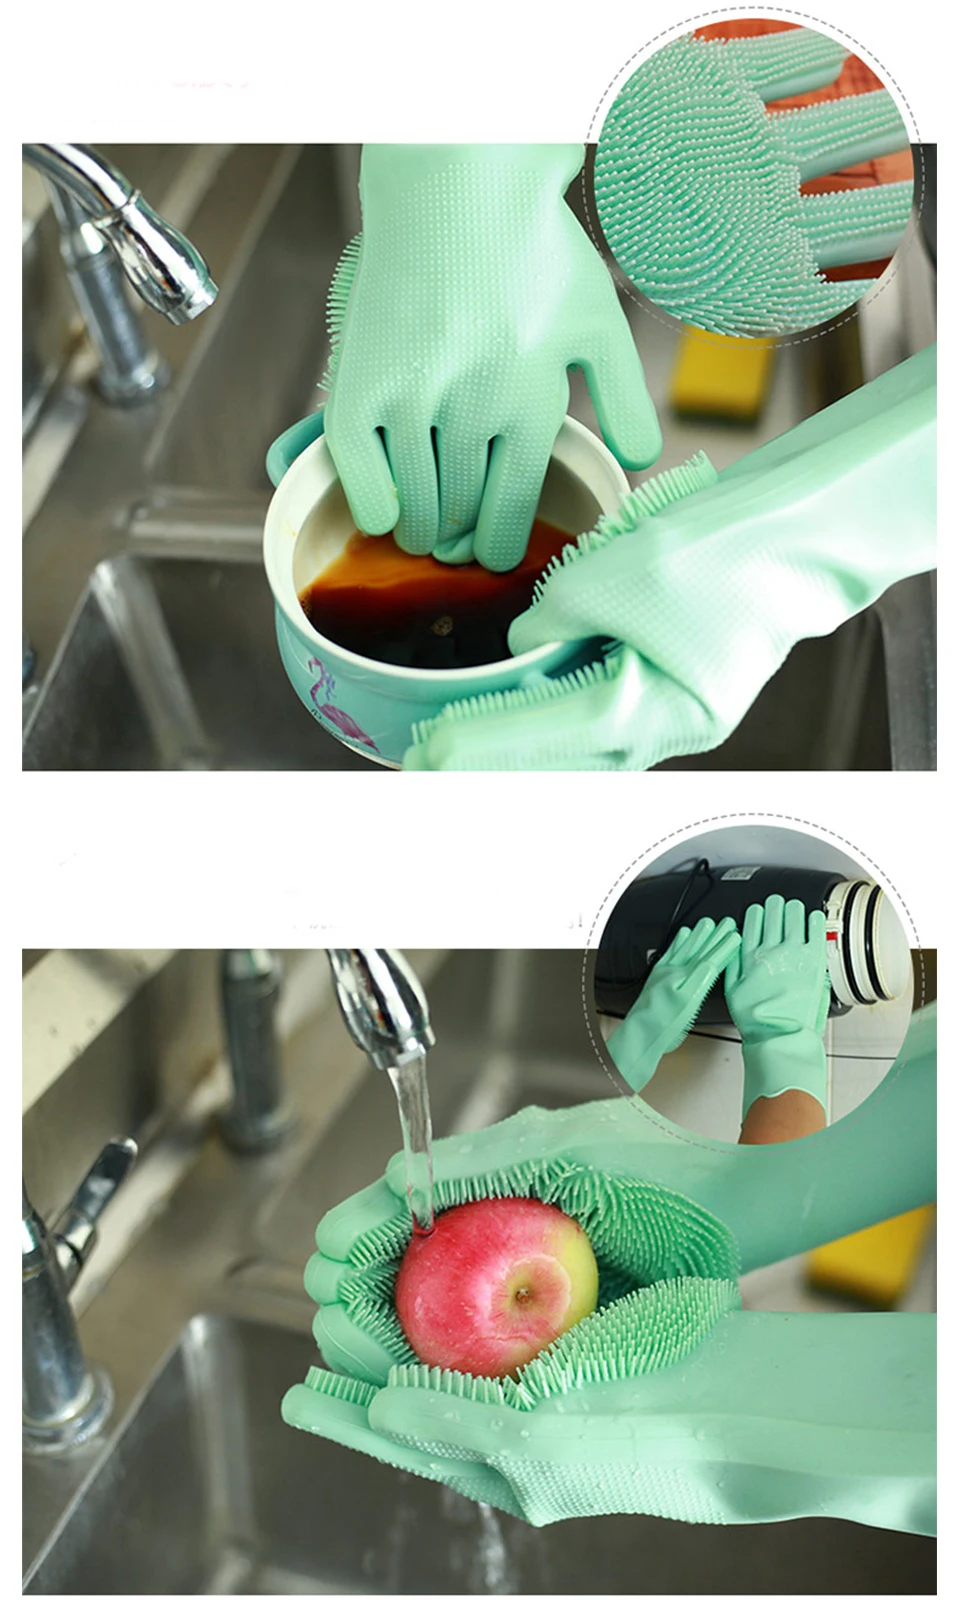 1 пара волшебных силиконовых перчаток для мытья посуды, силиконовые перчатки для мытья посуды для кухни и ванной, 8 цветов